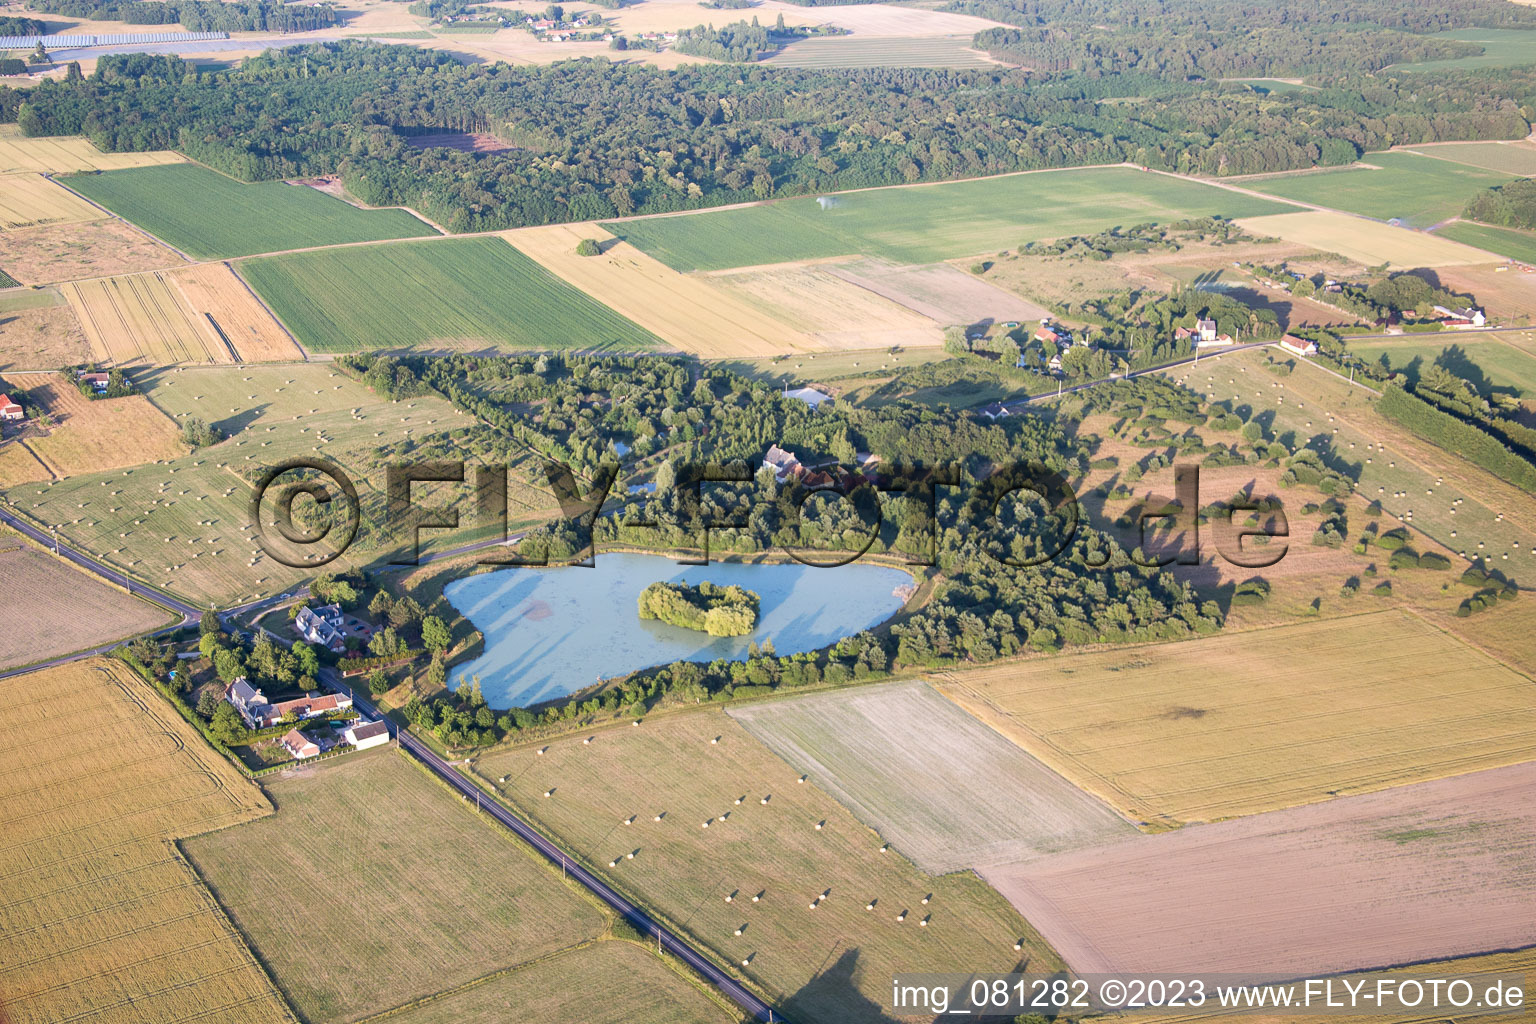 Vue aérienne de Cormeray dans le département Loir et Cher, France